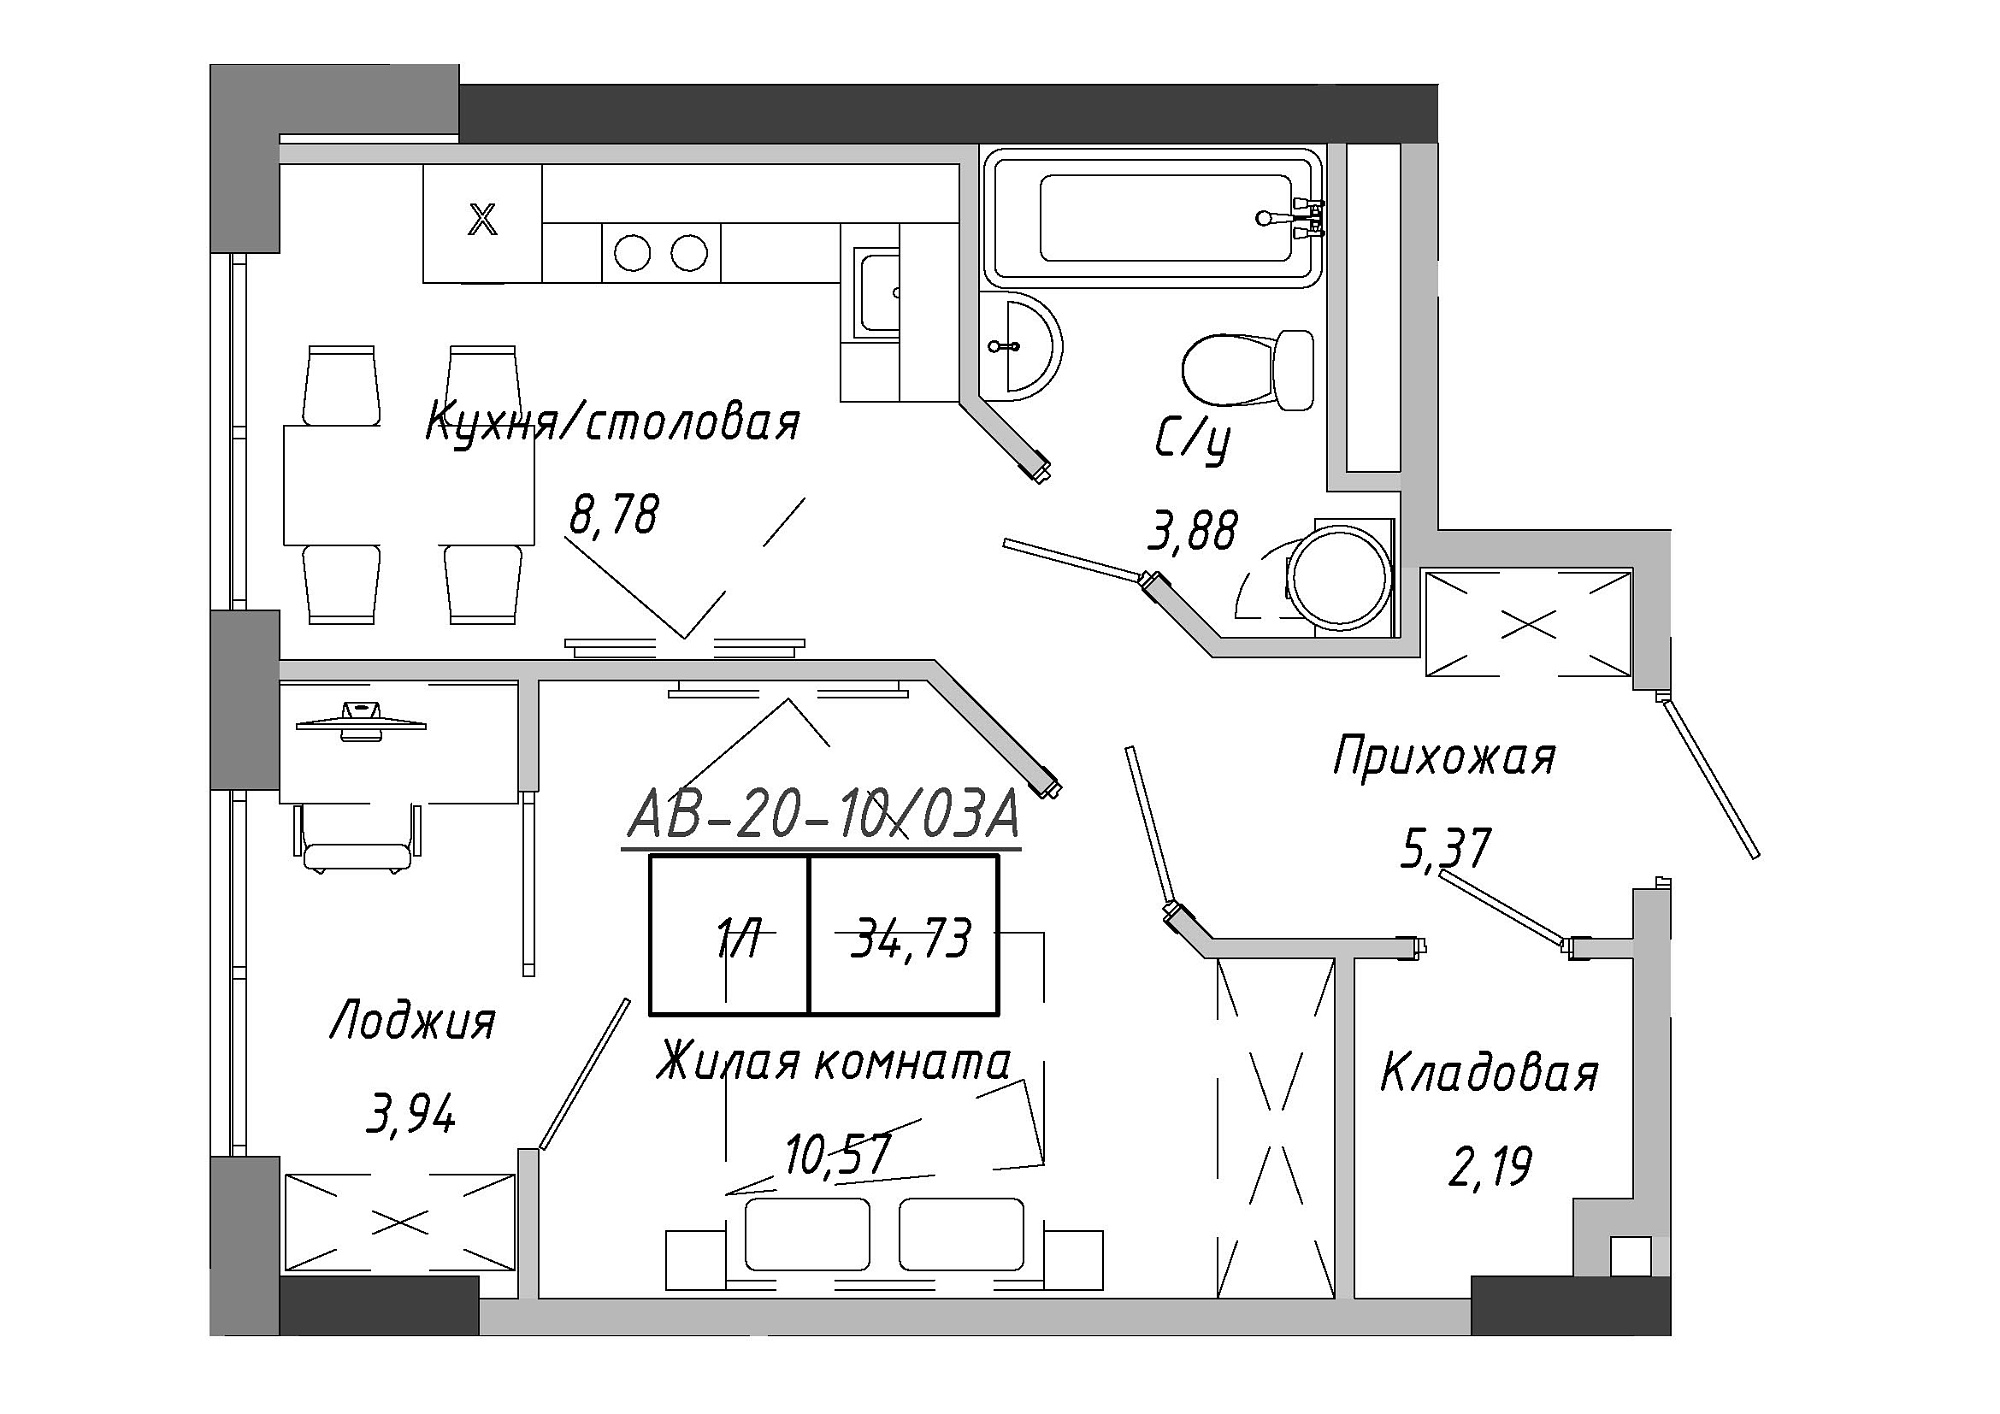 Планировка 1-к квартира площей 35.26м2, AB-20-10/0003а.